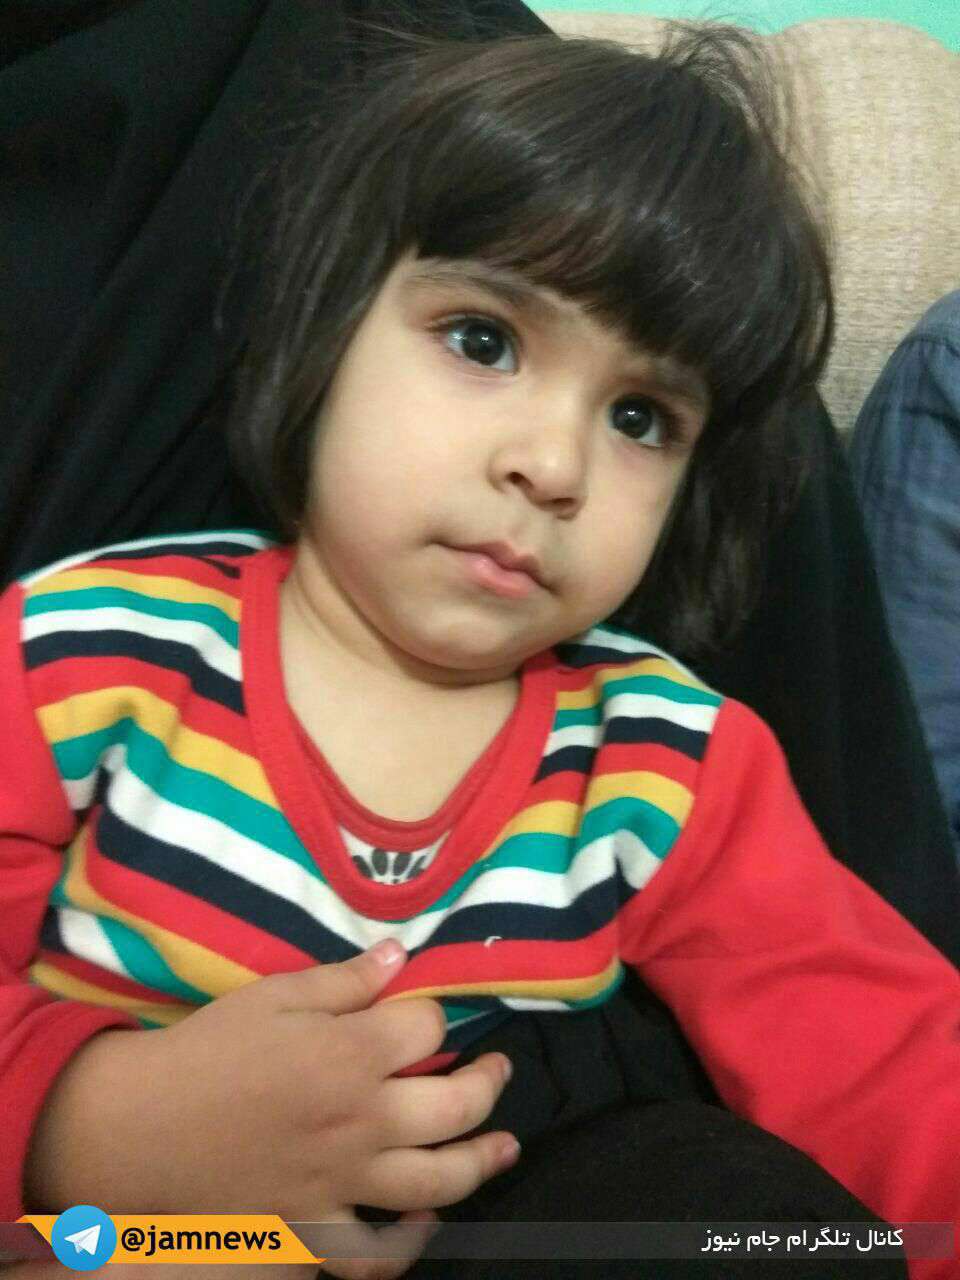 زینب خزایی دختر سه ساله شهید محسن خزایی، که عصر امروز در سوریه به شهادت رسید